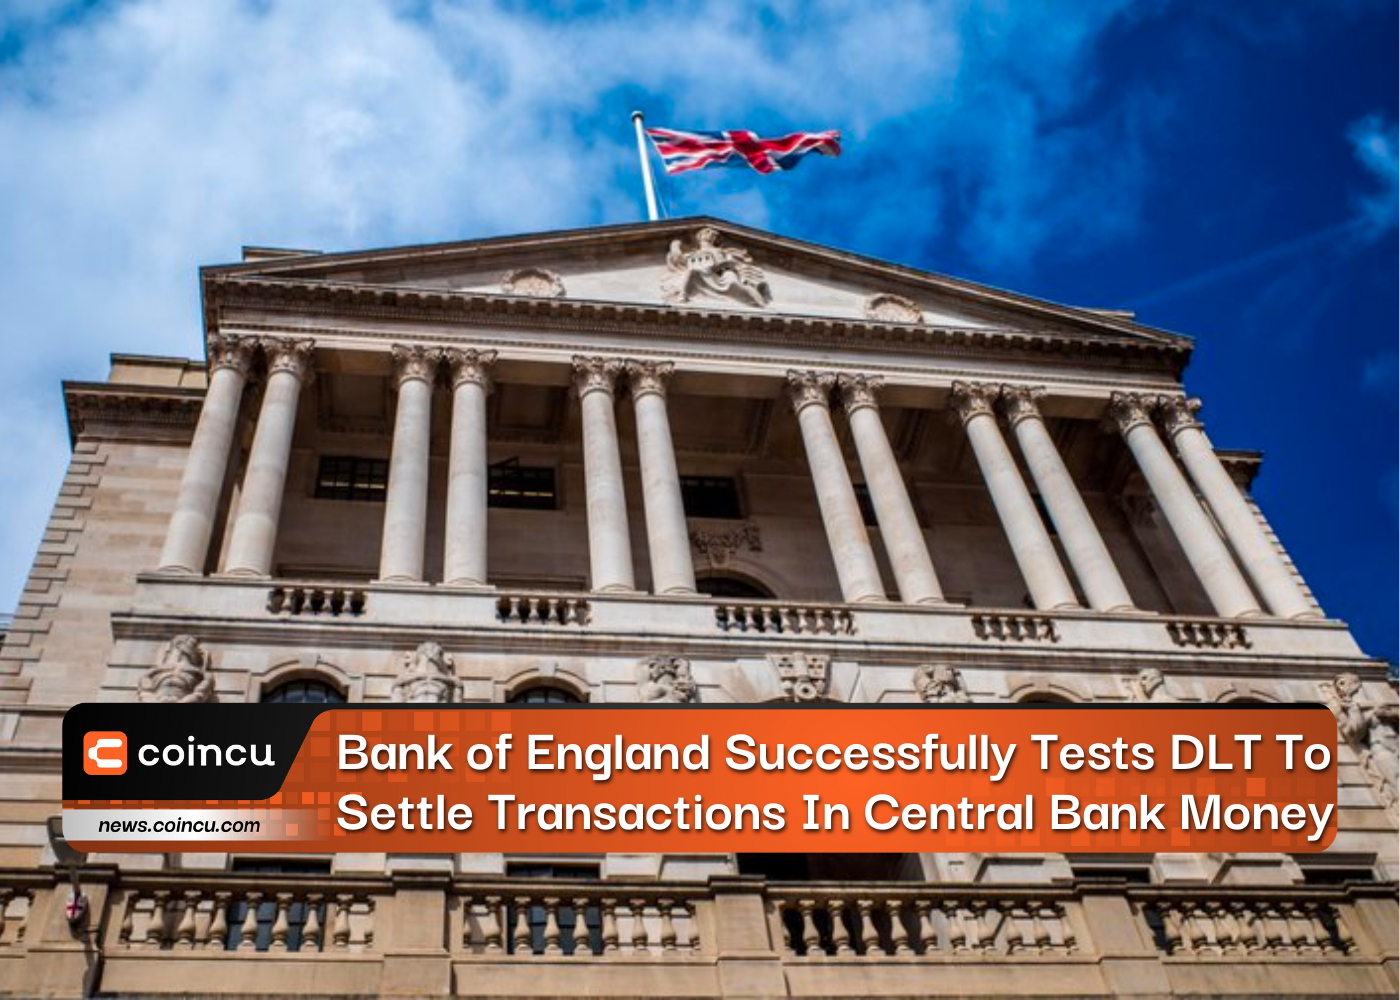 La Banque d'Angleterre teste avec succès le DLT pour régler les transactions en monnaie de banque centrale